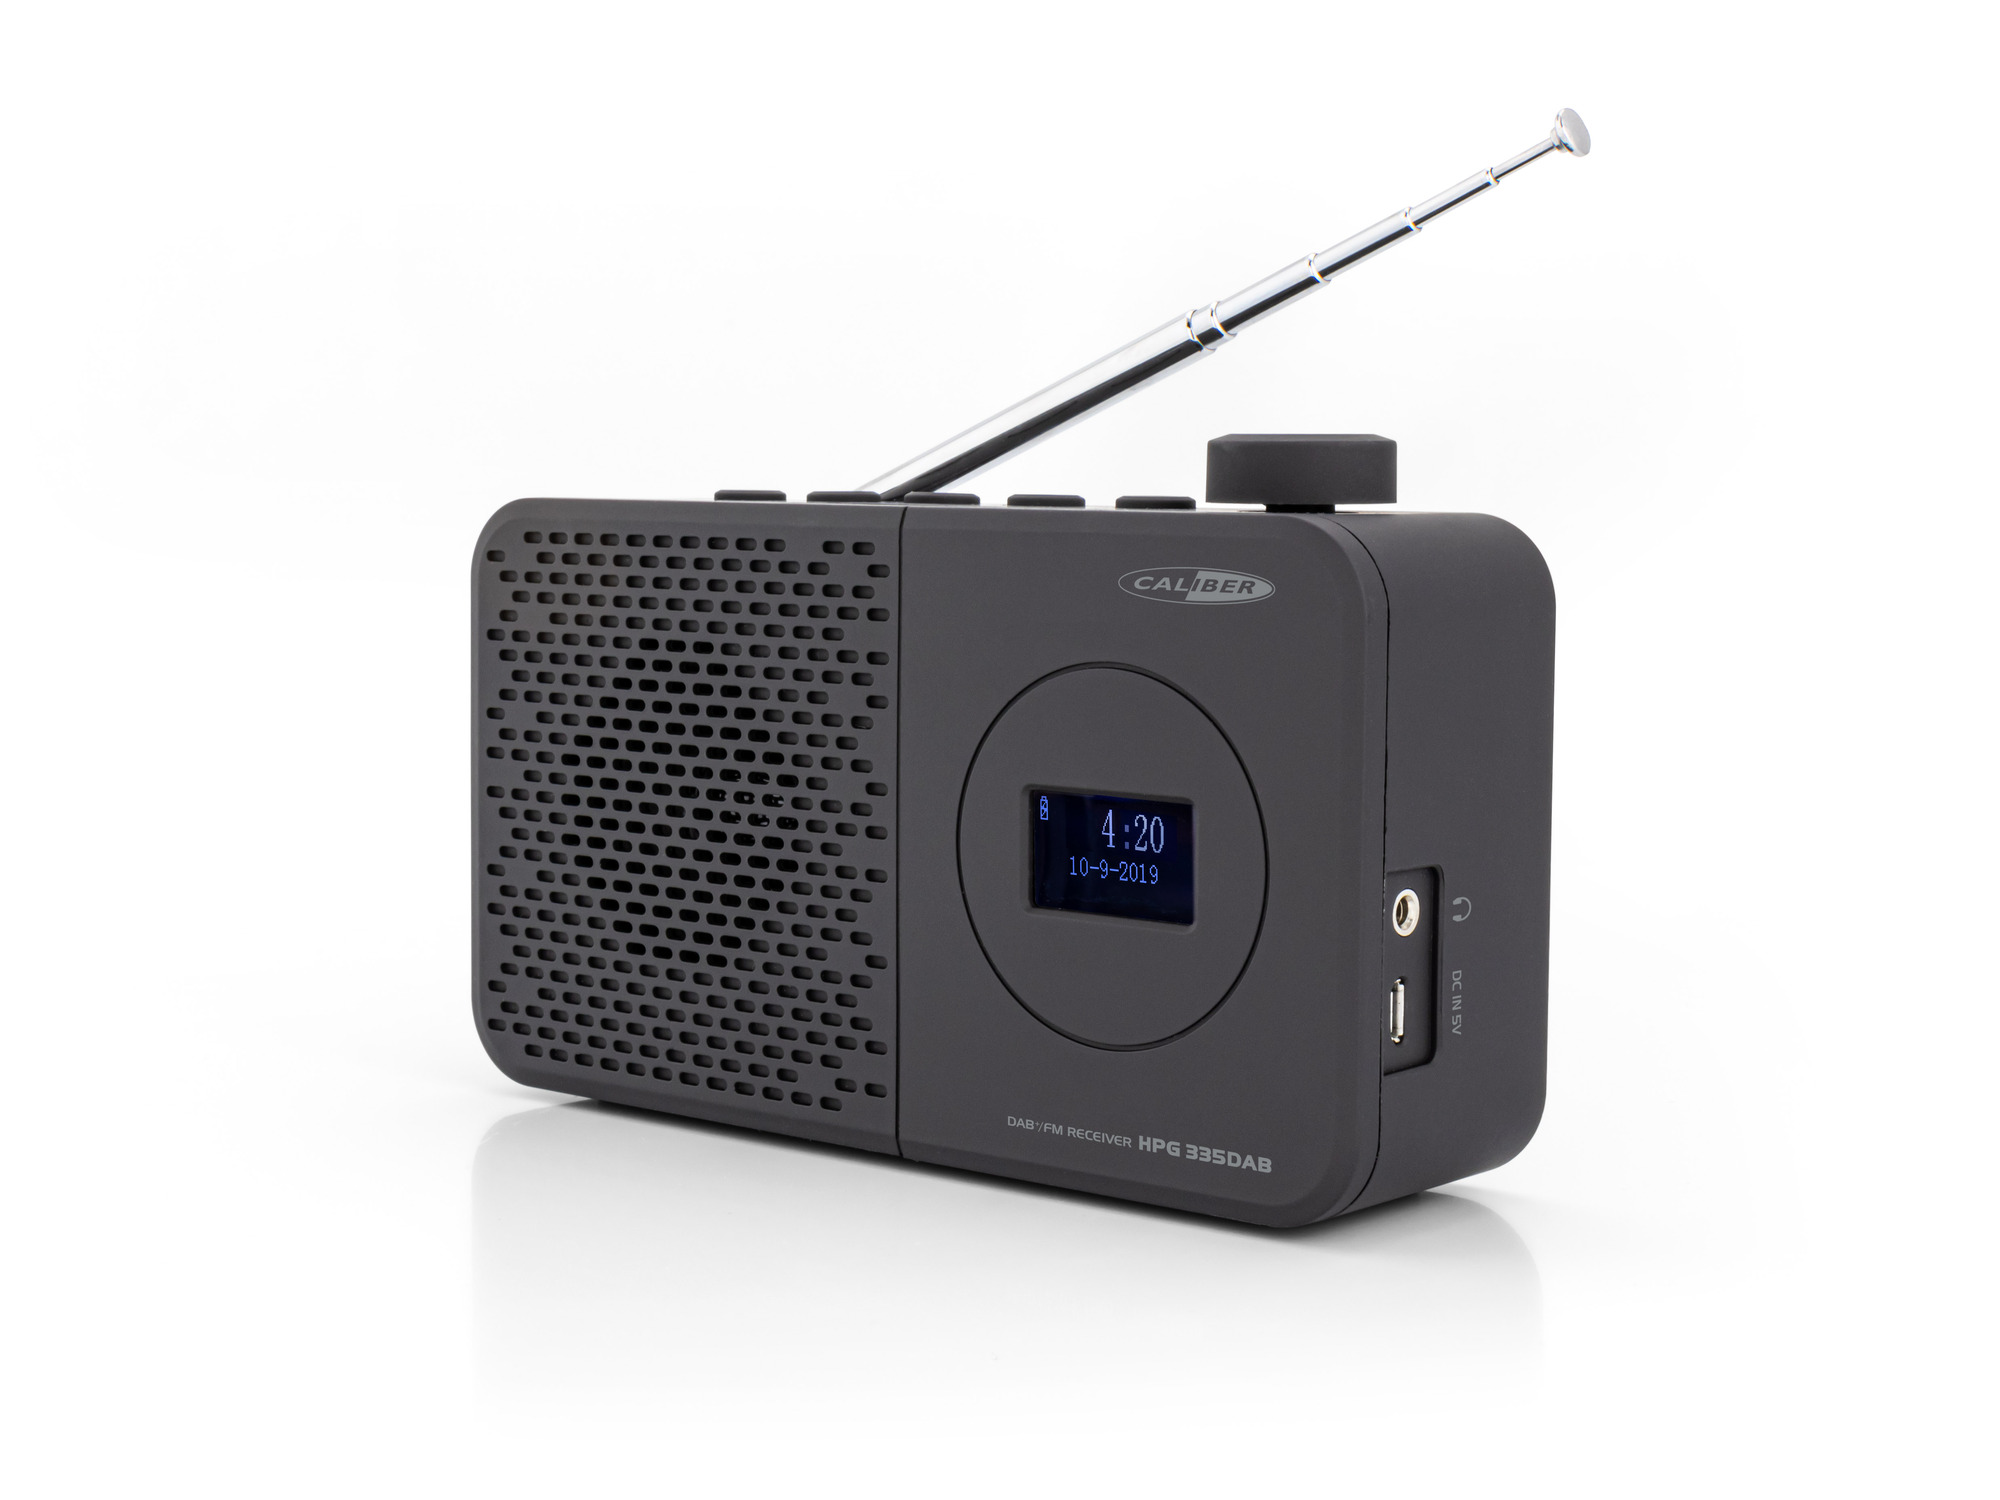 HPG335DAB DAB, CALIBER DAB+, Portable FM, DAB+, Schwarz radio,